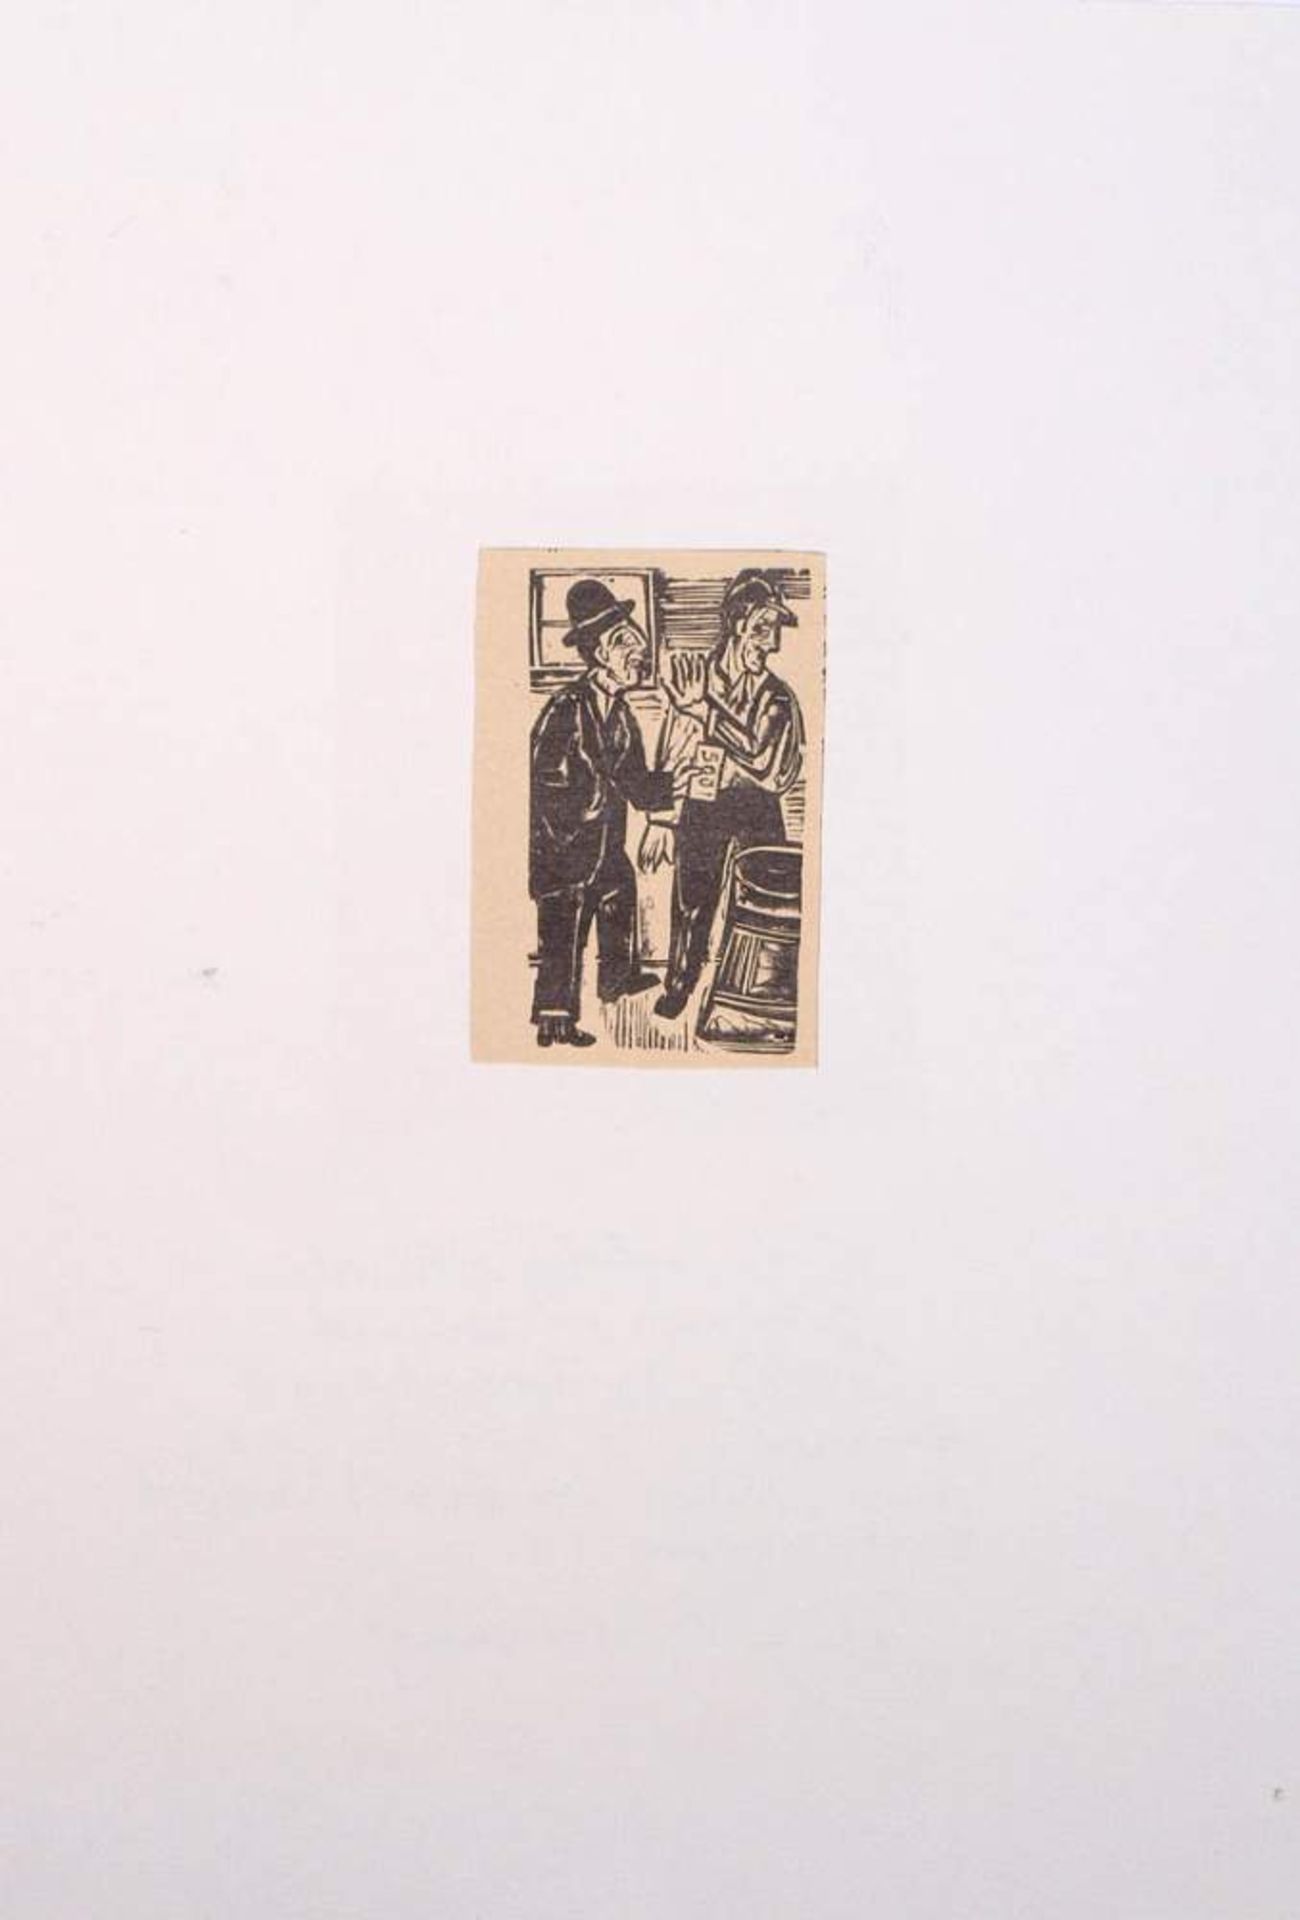 Kirchner, Ernst Ludwig, 1880 - 1938Holzschnitt, bet. "Die Bestechung" aus "Neben der Heerstraße". - Bild 3 aus 3